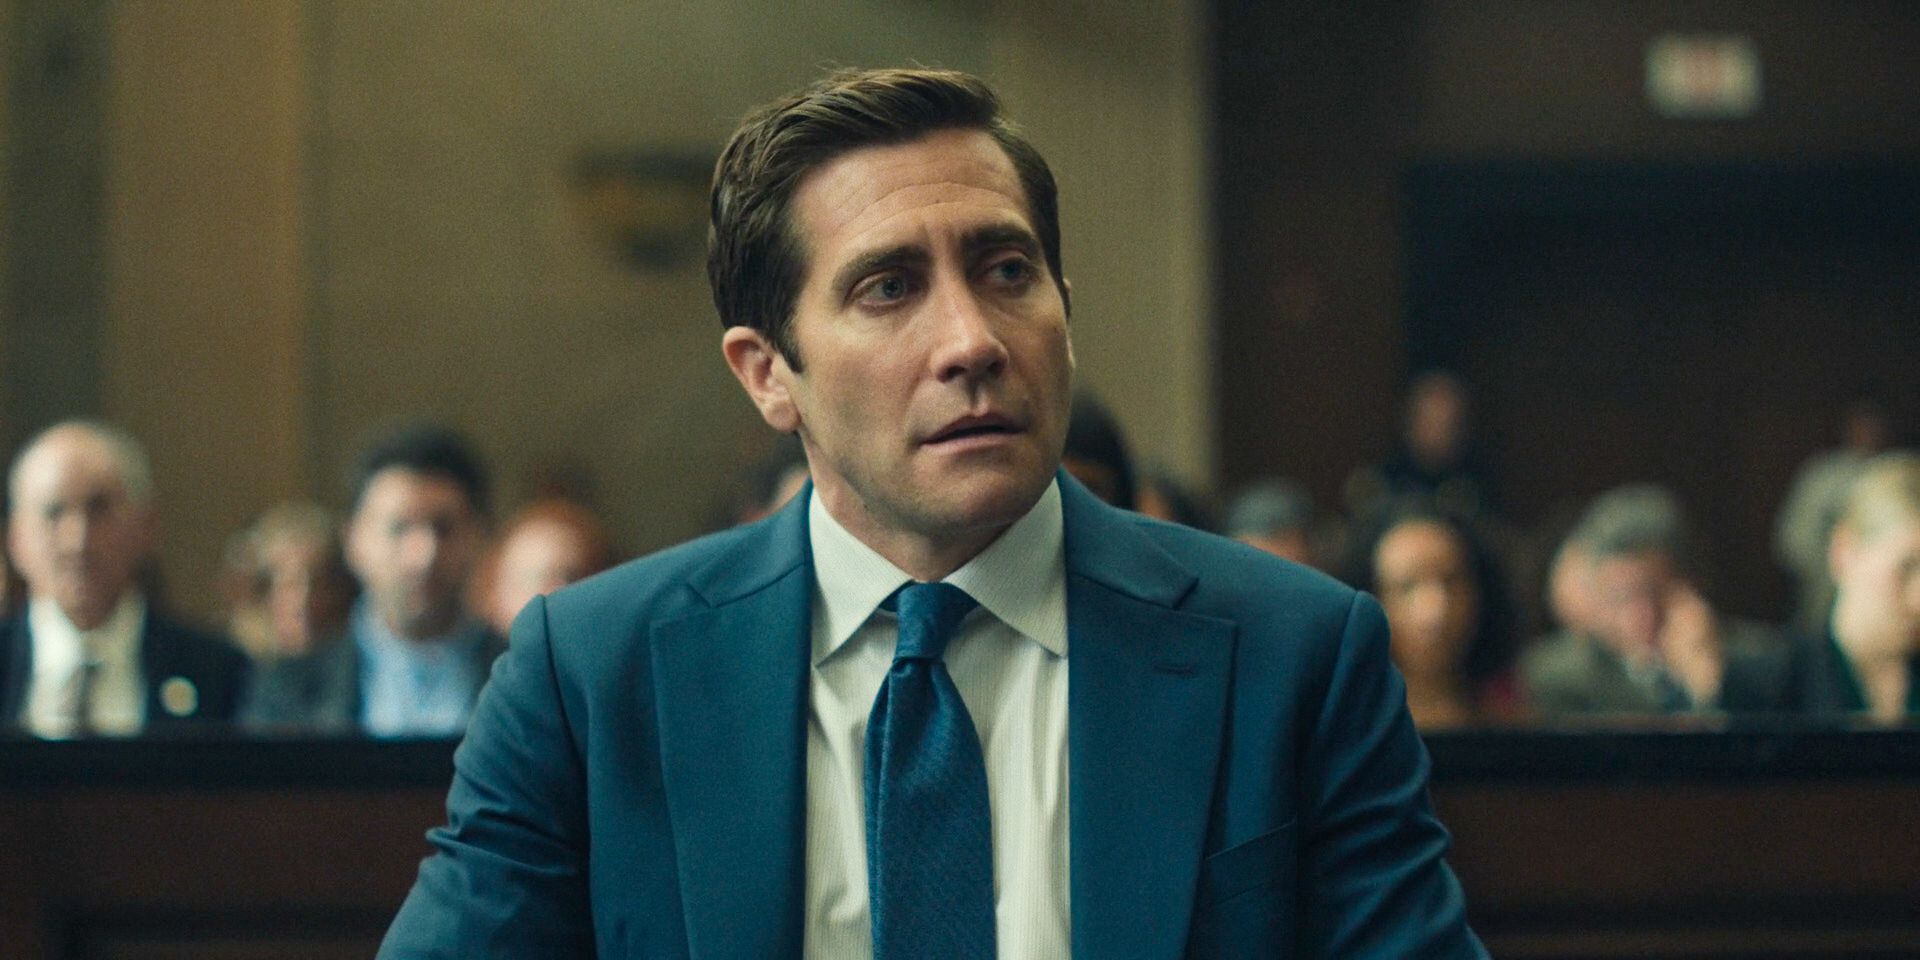 Rusty (Jake Gyllenhaal) parecendo nervoso no tribunal após fazer seu discurso de encerramento no episódio 8 da 1ª temporada de Presumed Innocent